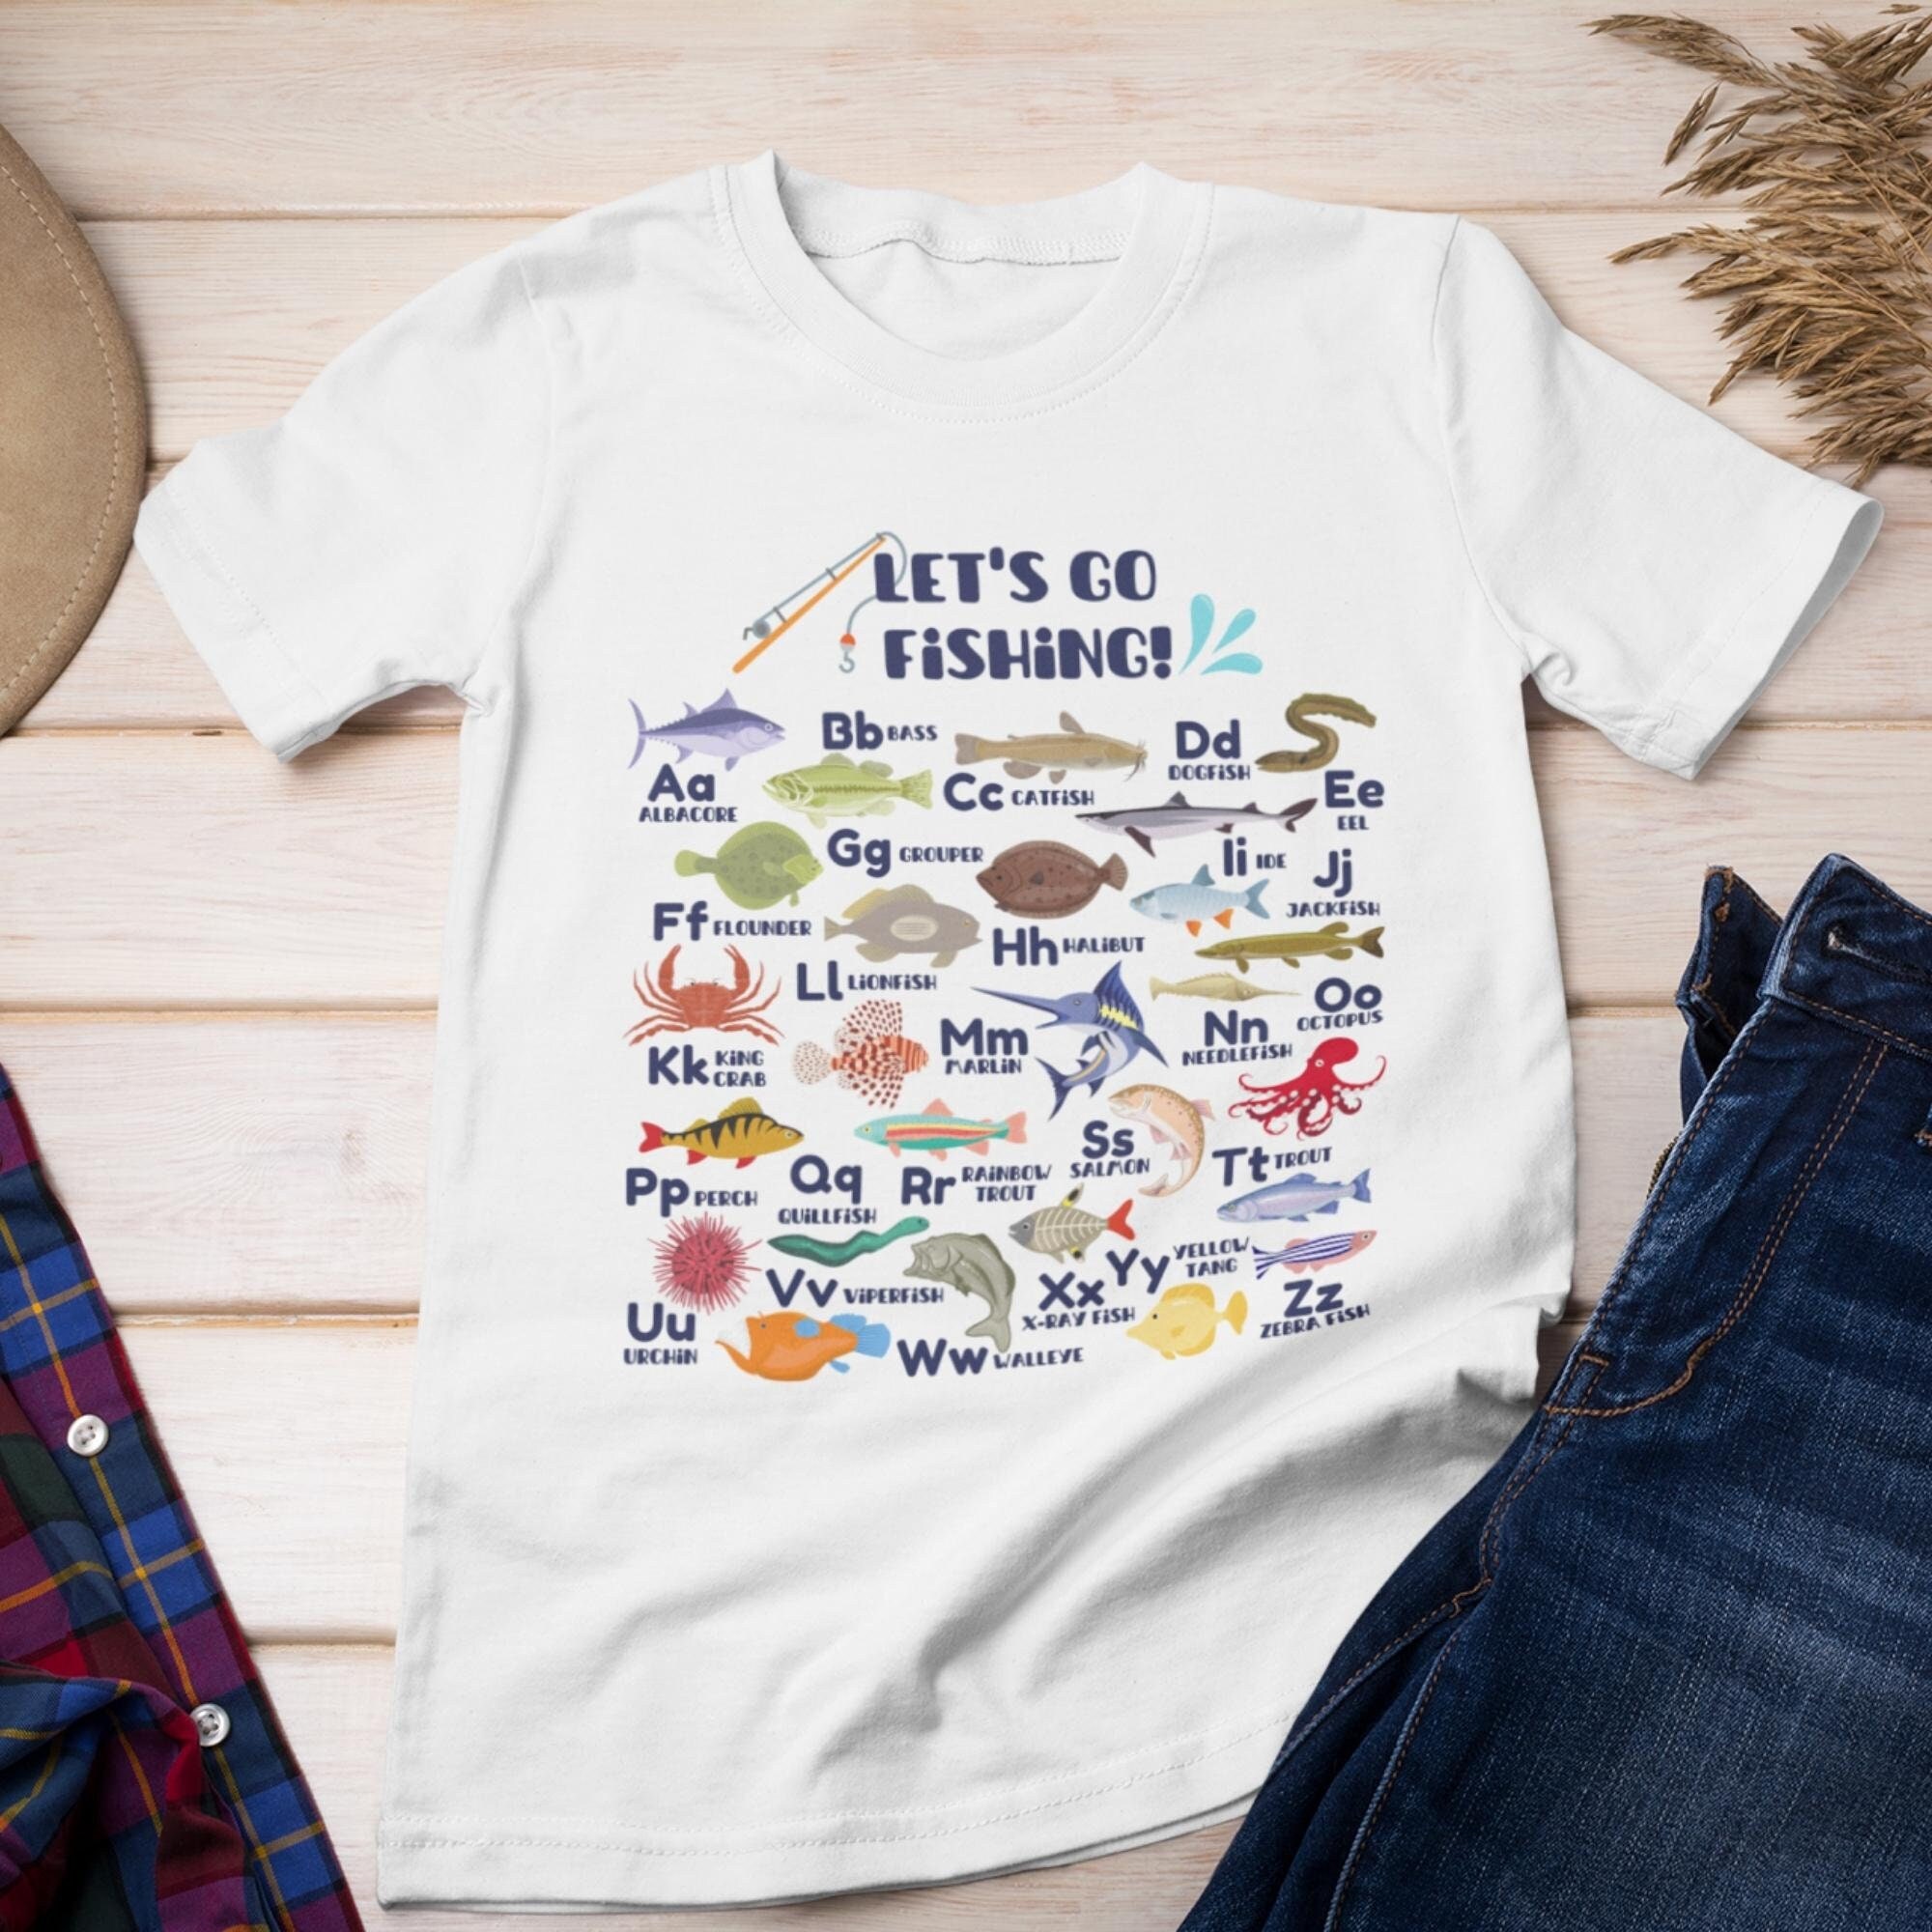 Let's Go Fishing Fishing Alphabet Shirt, Dad Fishing Shirt, Teacher Fish  ABC Shirt, Fishing ABC Shirt for Teachers, Fishing Shirt for Dad 